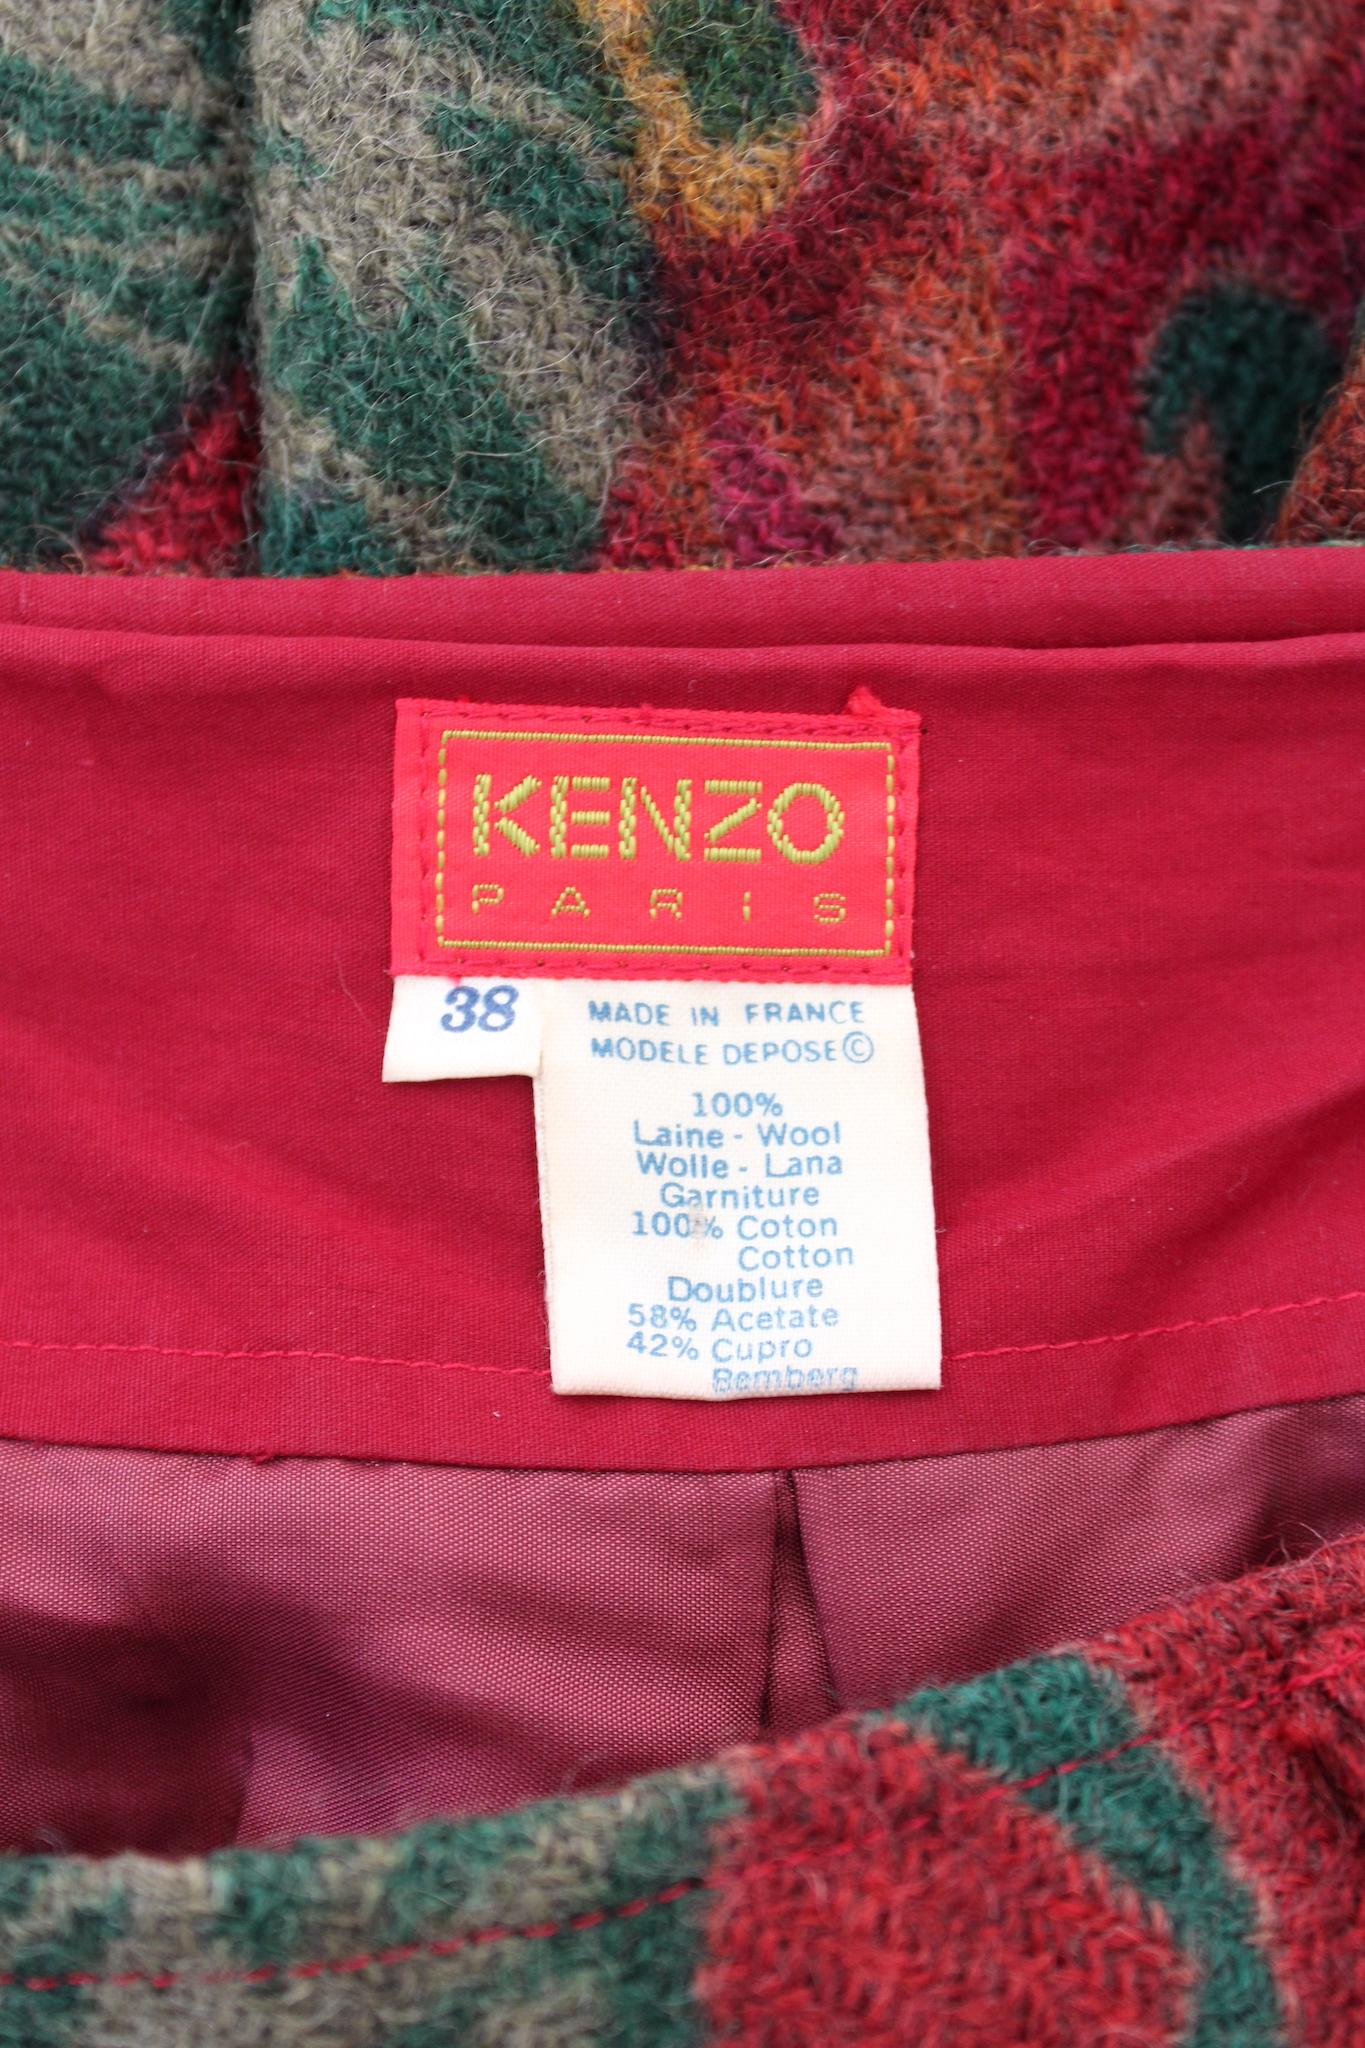 Kenzo - Jupe ballon en laine à fleurs rouges, vintage, années 80 2